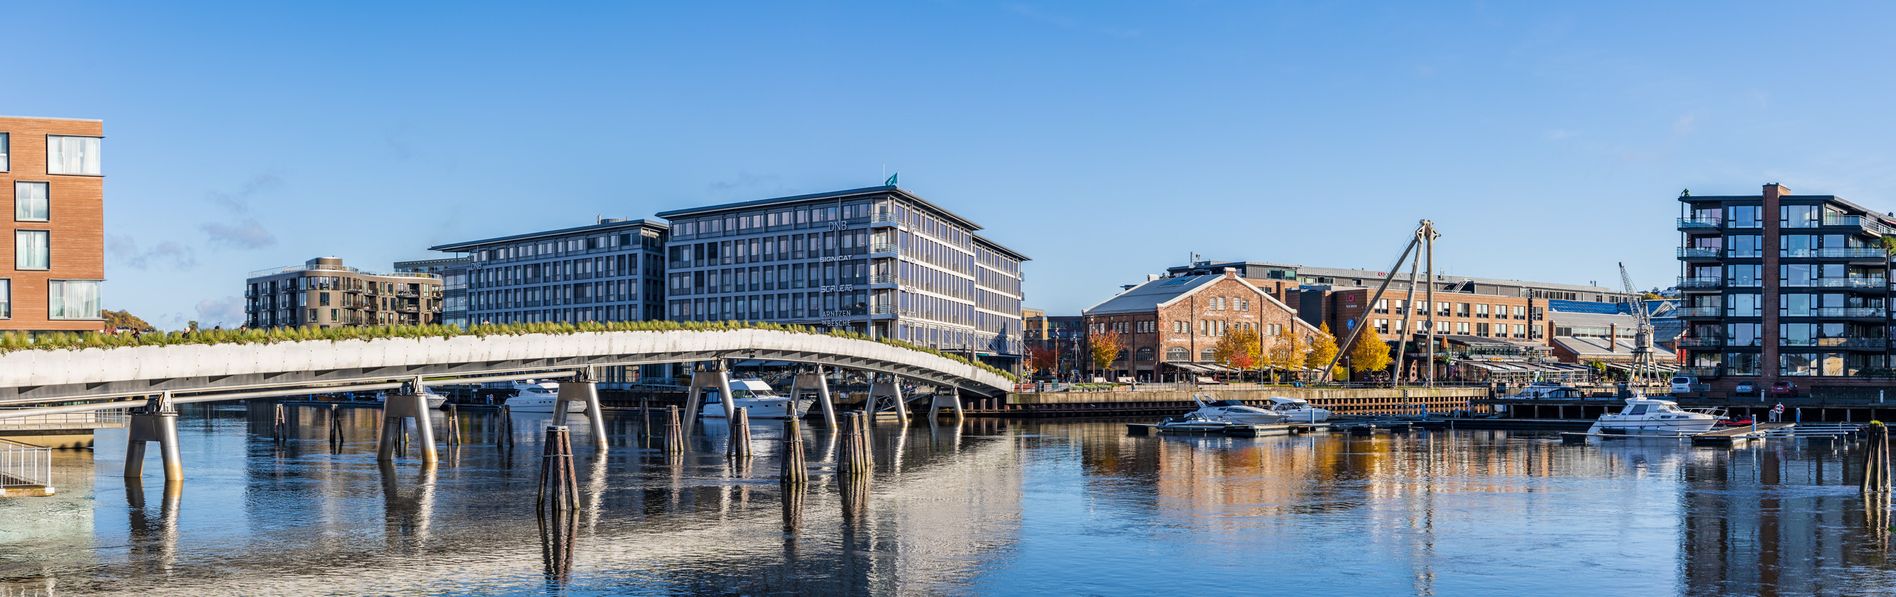  Ved enden av denne gang- og sykkelbroen over Nidelven ligger DNBs hovedkontor i Trondheim.  <i>Foto:  TUM Studio</i>